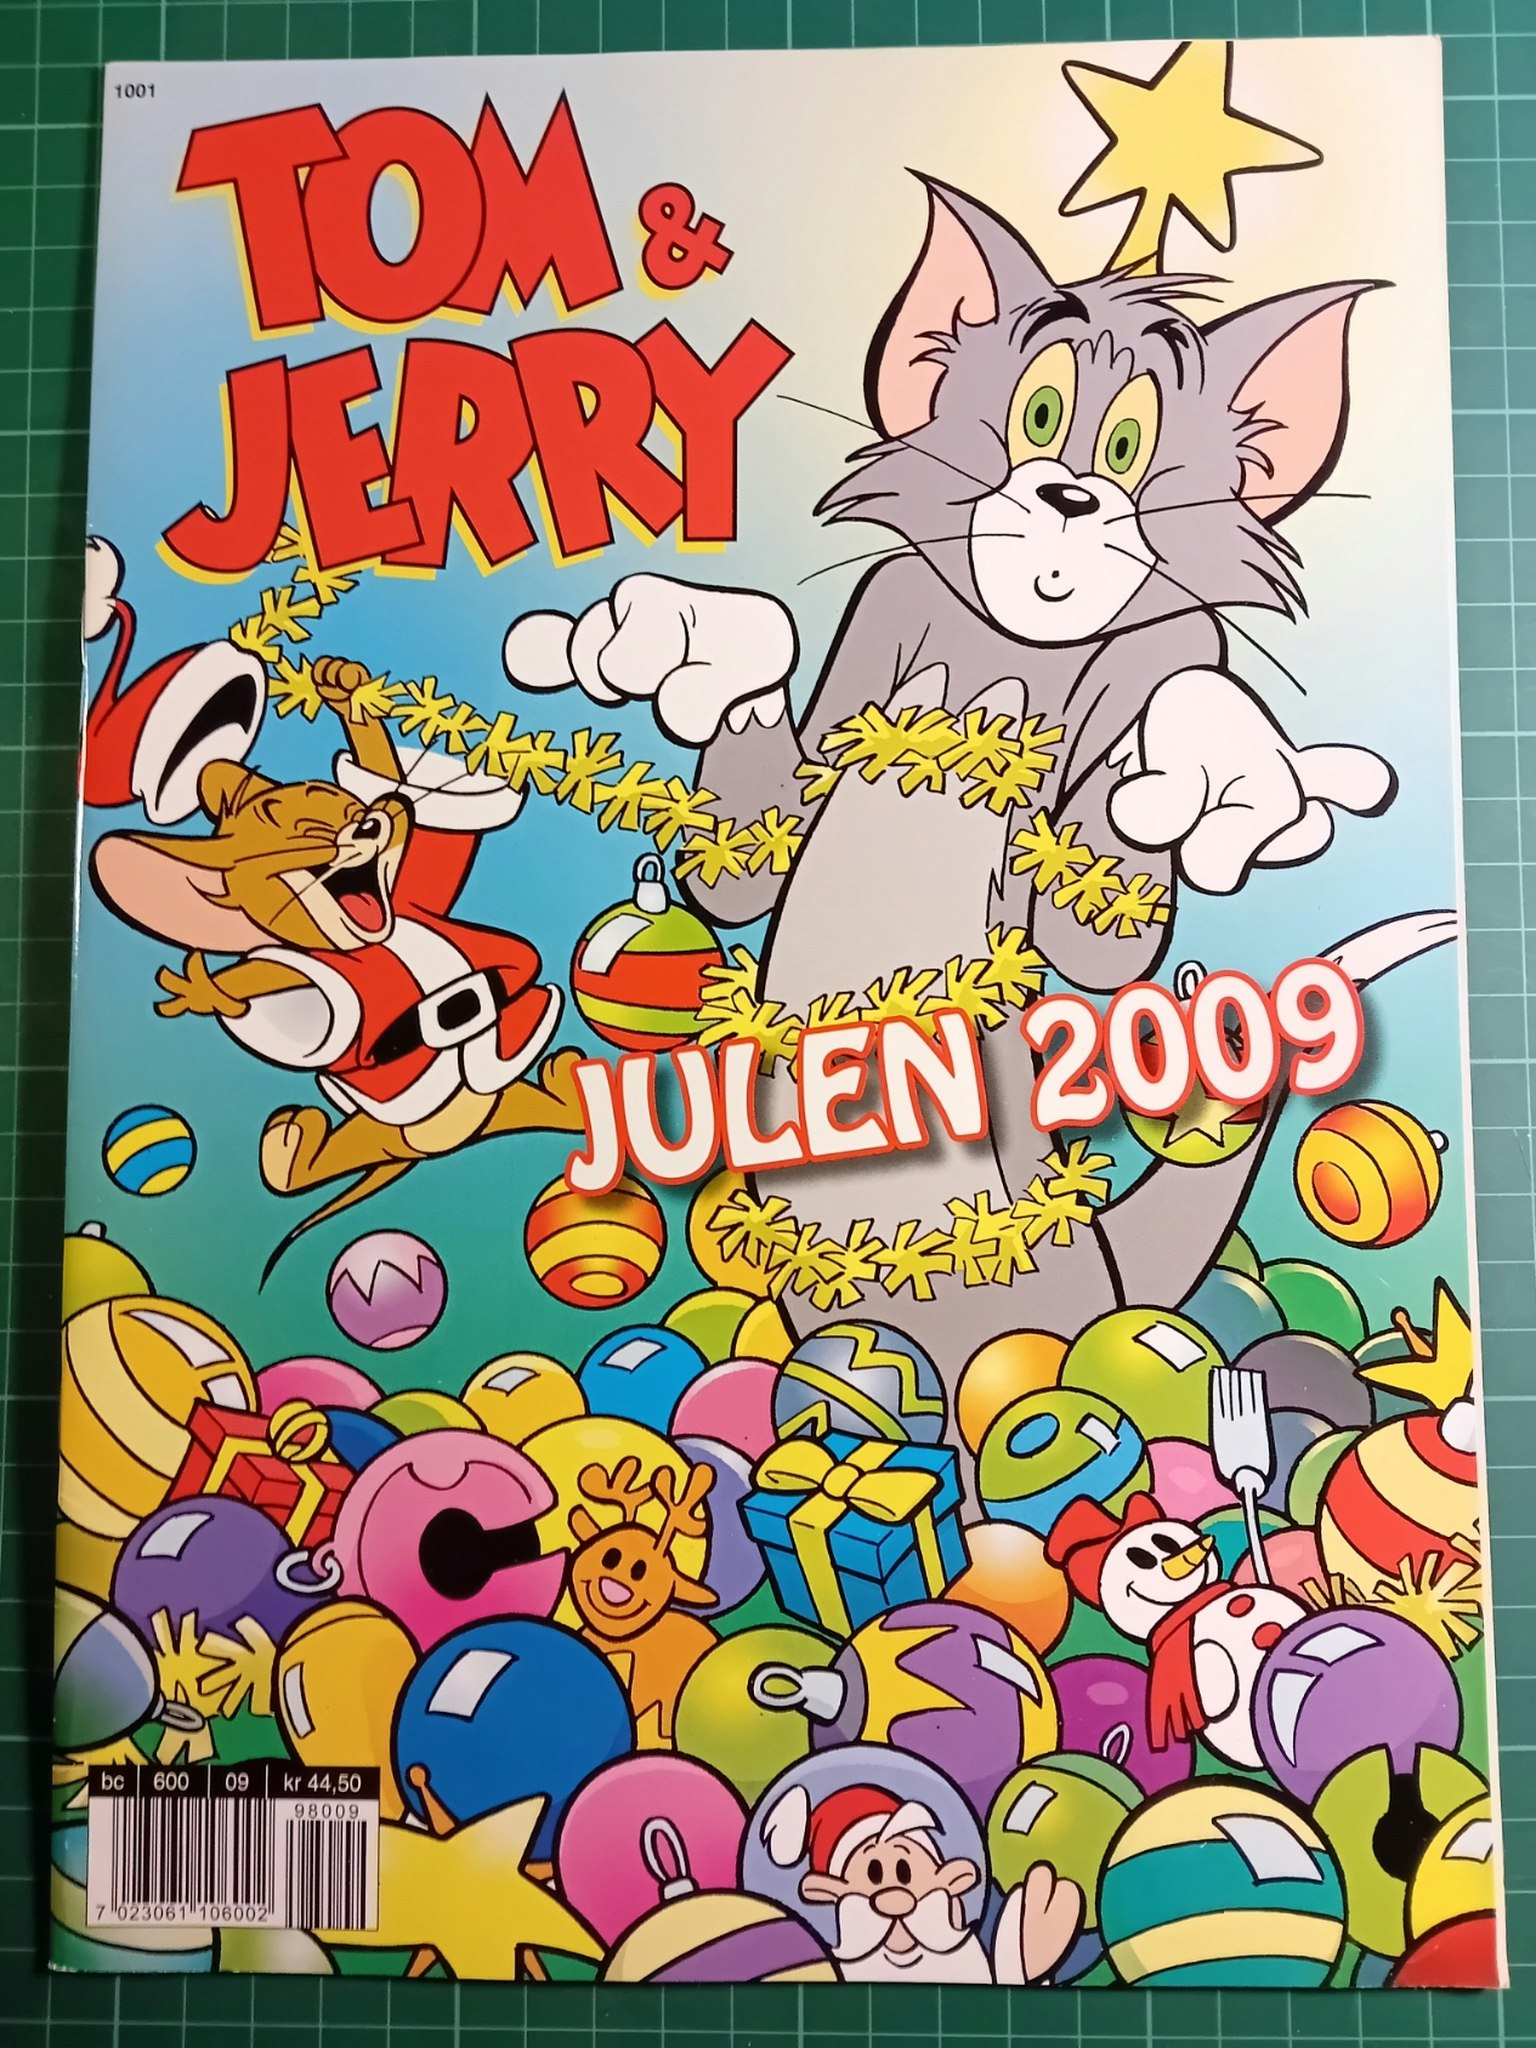 Tom & Jerry julen 2009